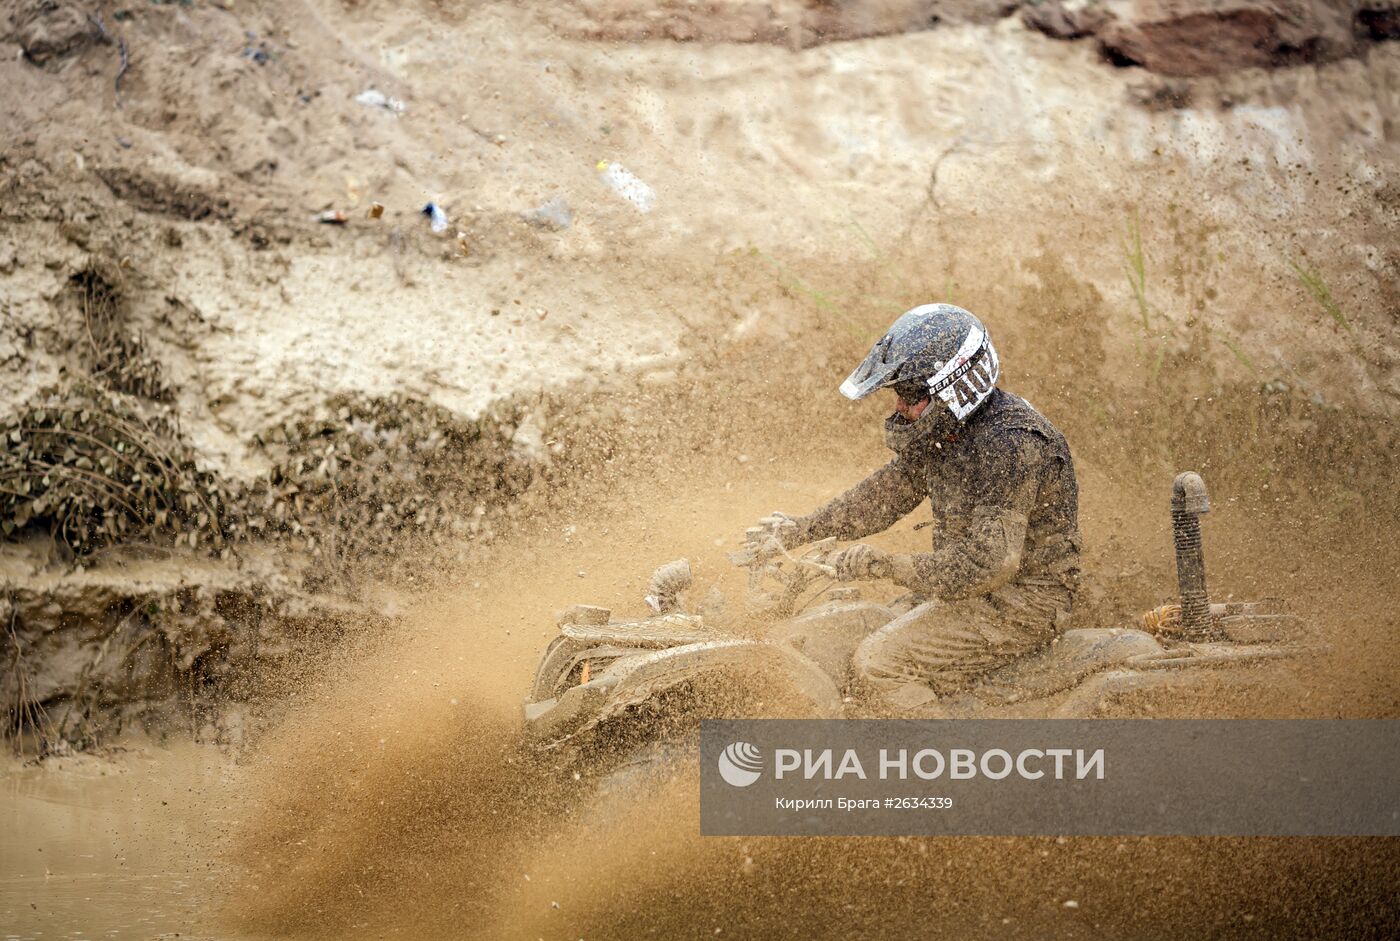 Трофи-рейд "Генералы песчаных карьеров" в Волгоградской области